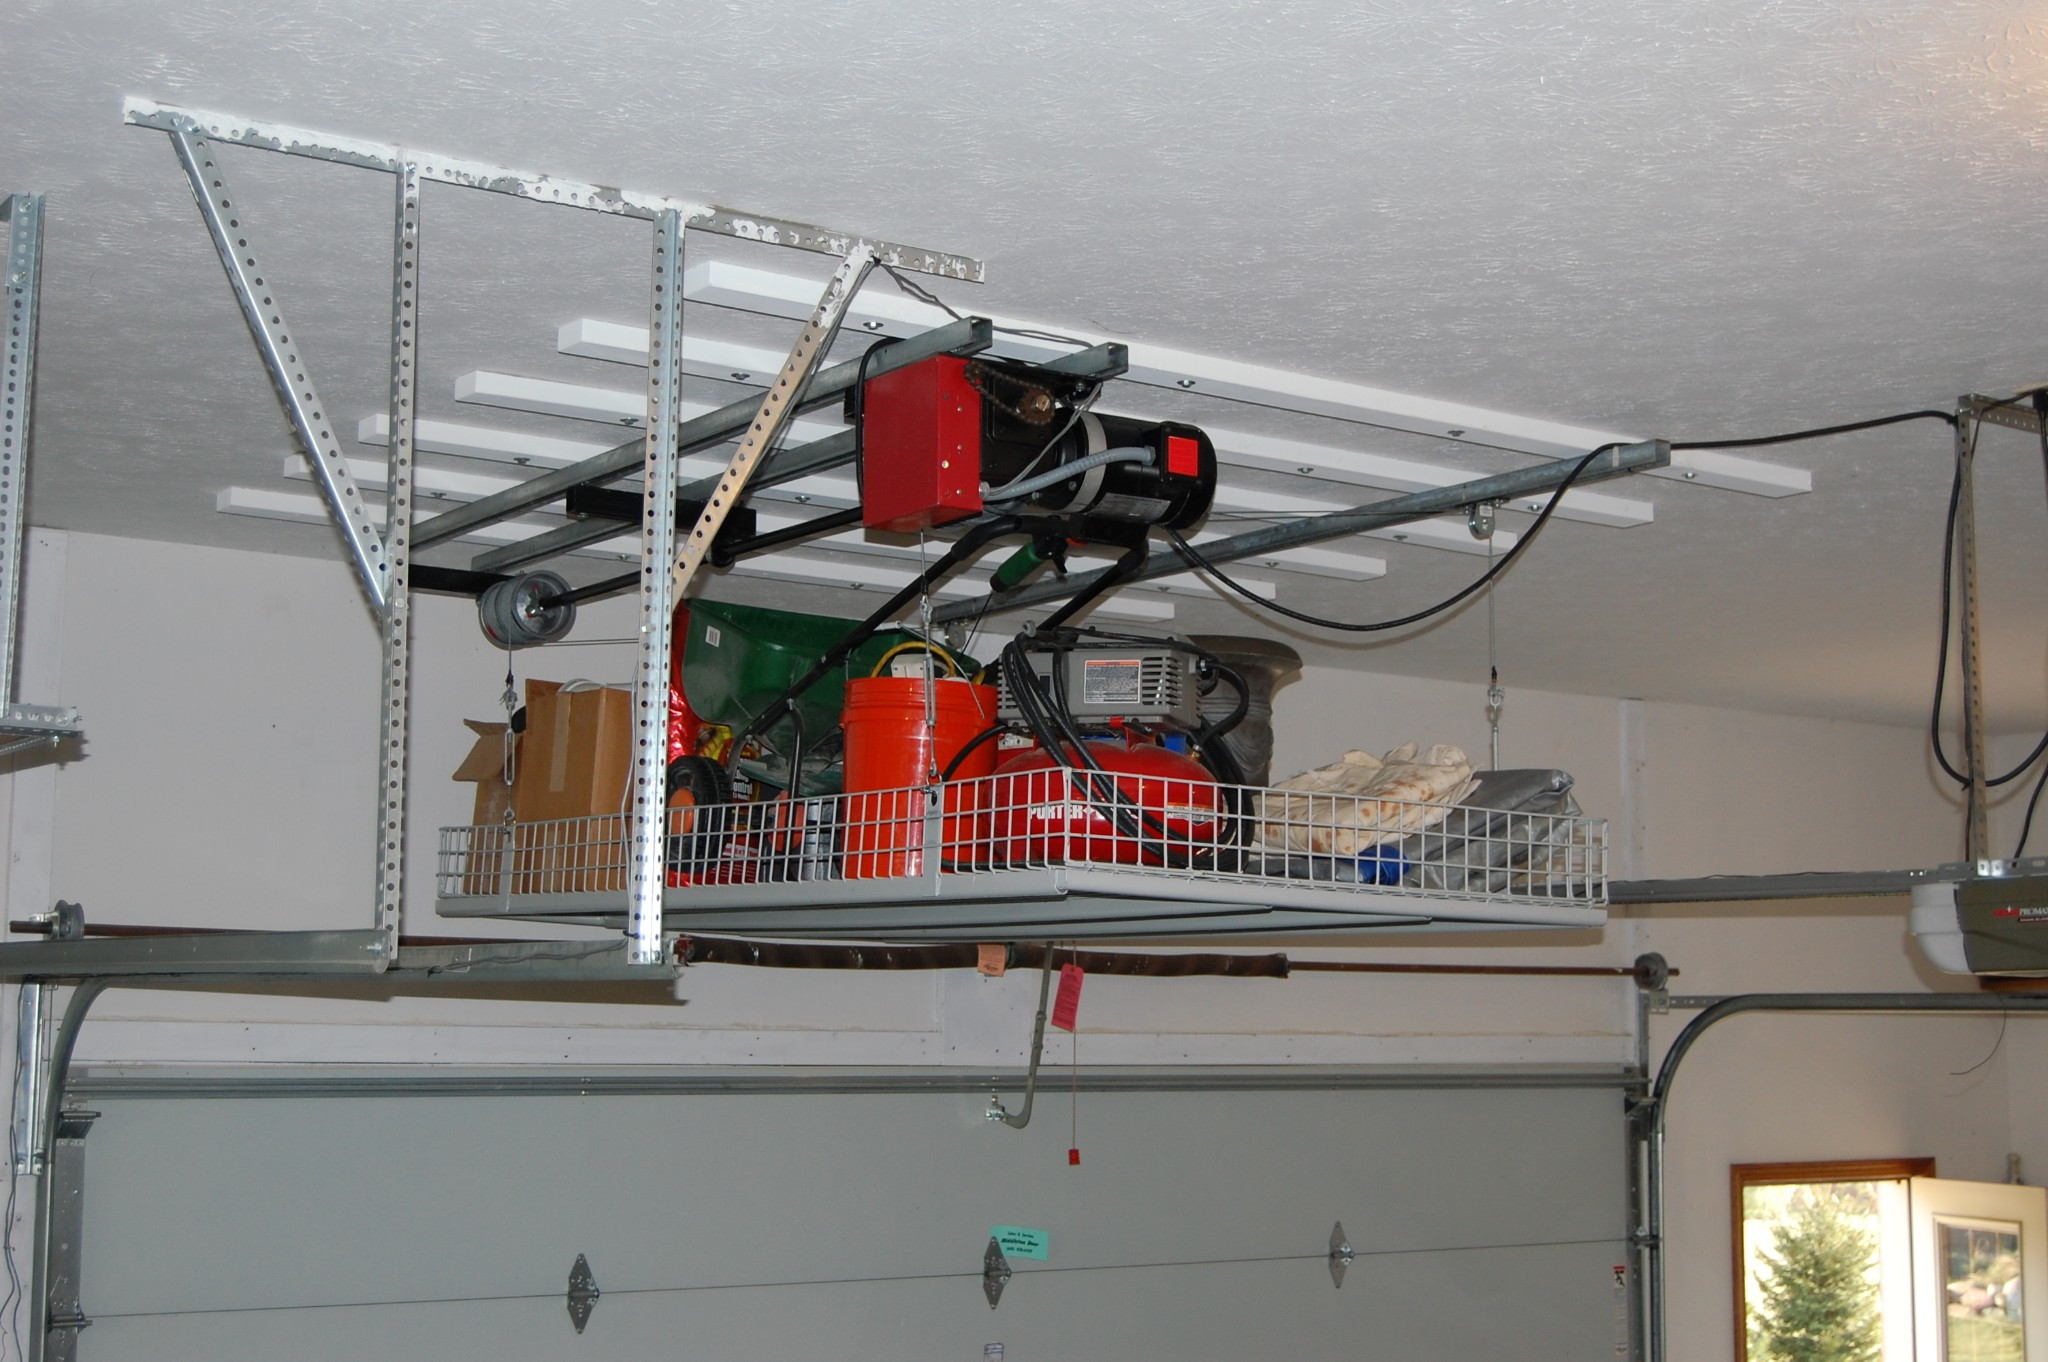 Best ideas about Garage Ceiling Storage Lift
. Save or Pin Diy Overhead Garage Storage Lift DIY Unixcode Diy Garage Now.